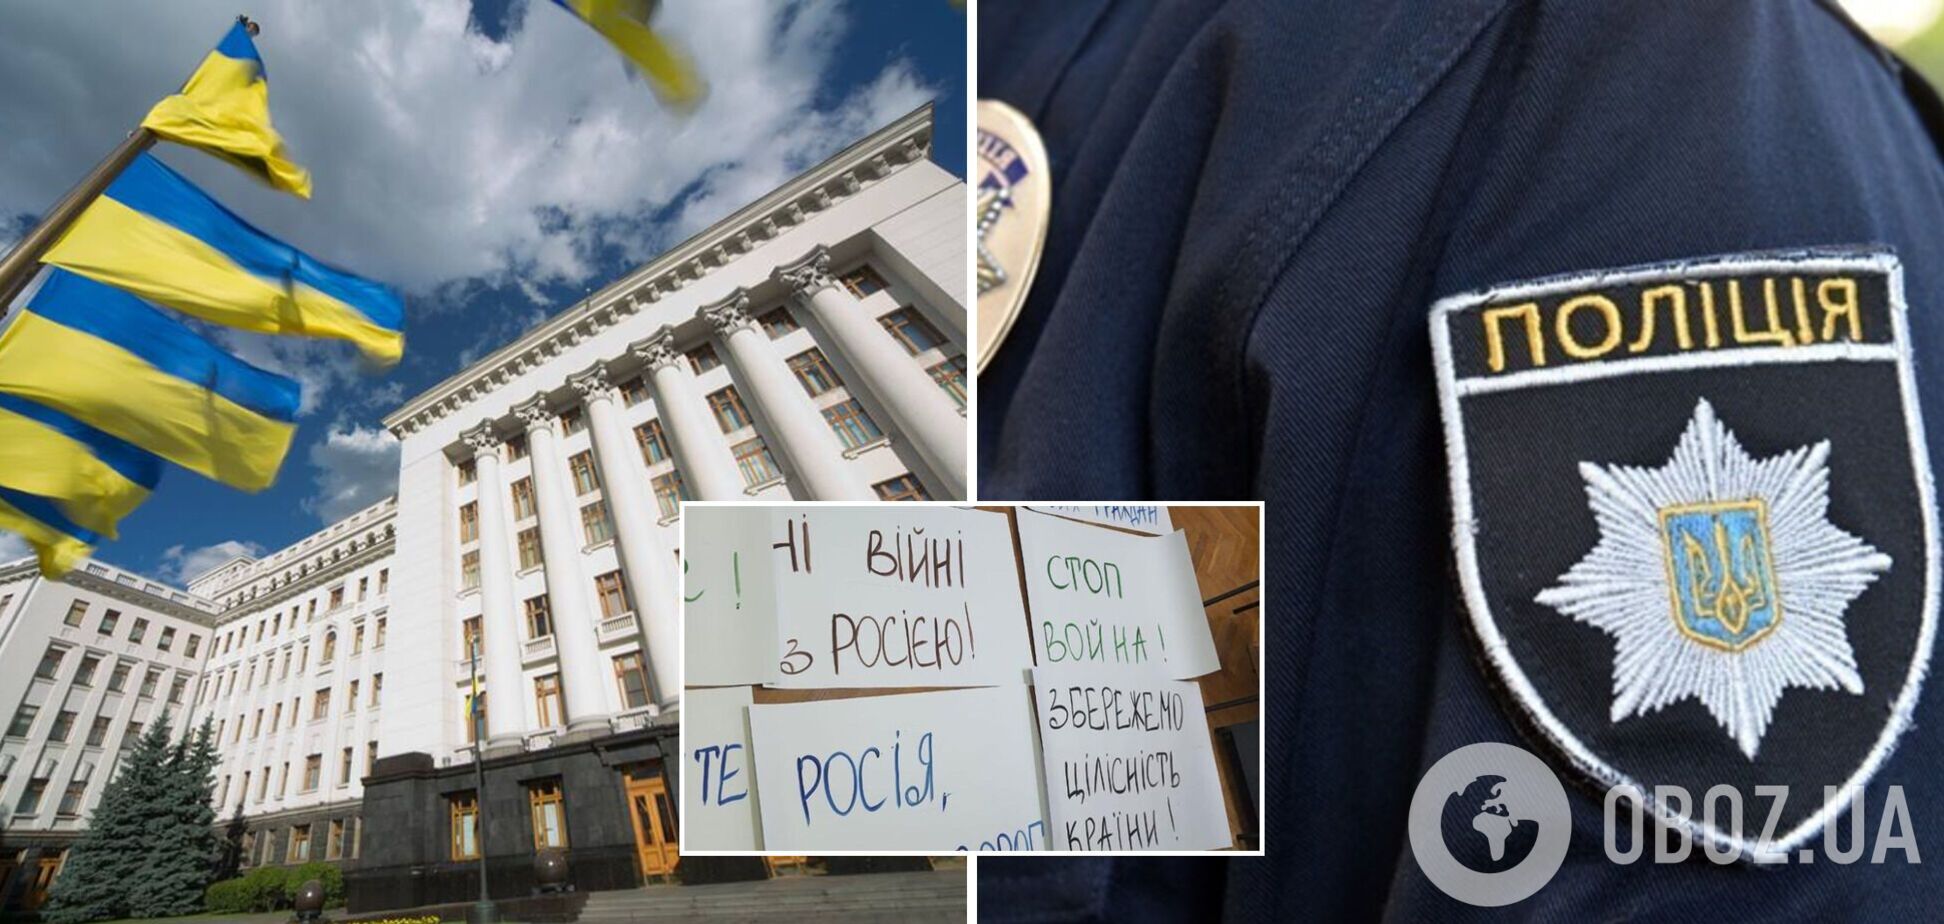 Нацполиция в Киеве разоблачила организаторов проплаченного митинга